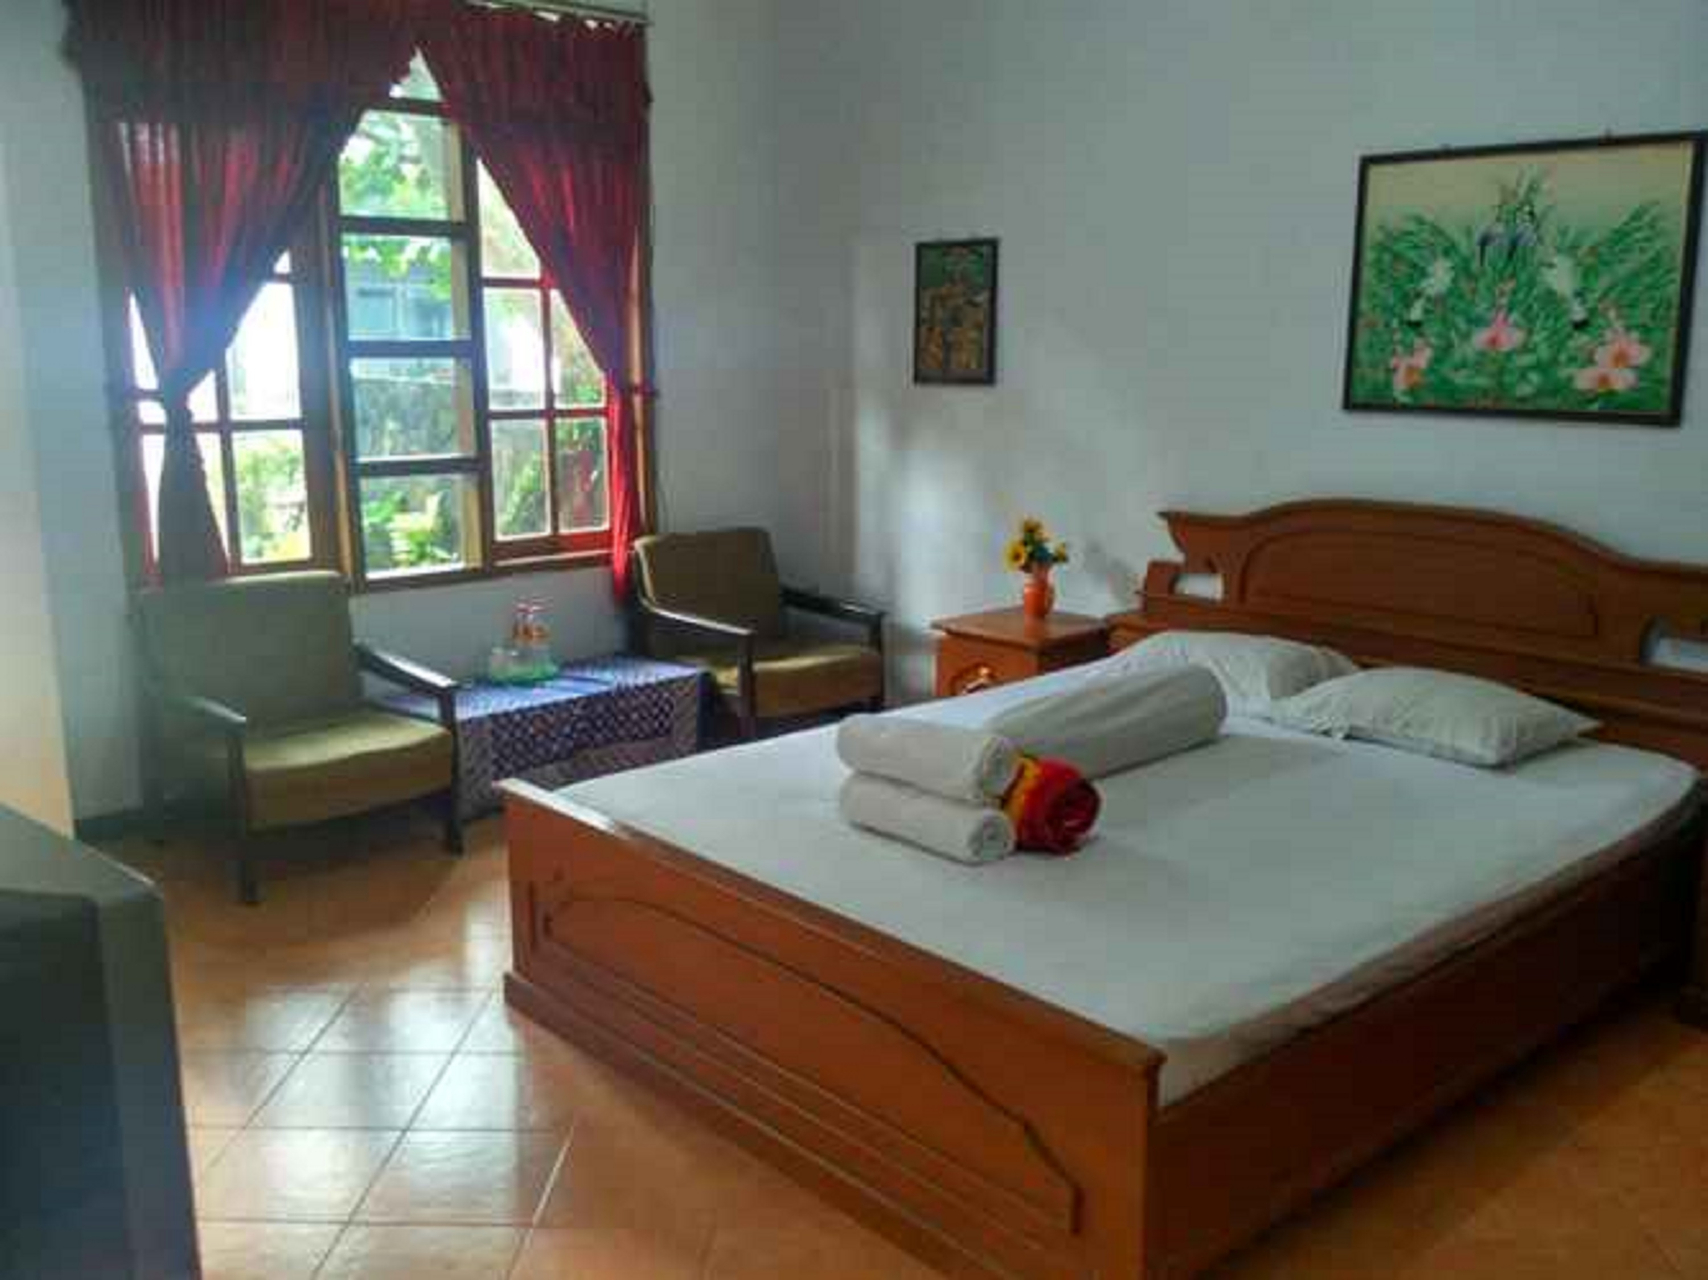 Bedroom 4, Hotel Suronegaran Purworejo RedPartner, Purworejo